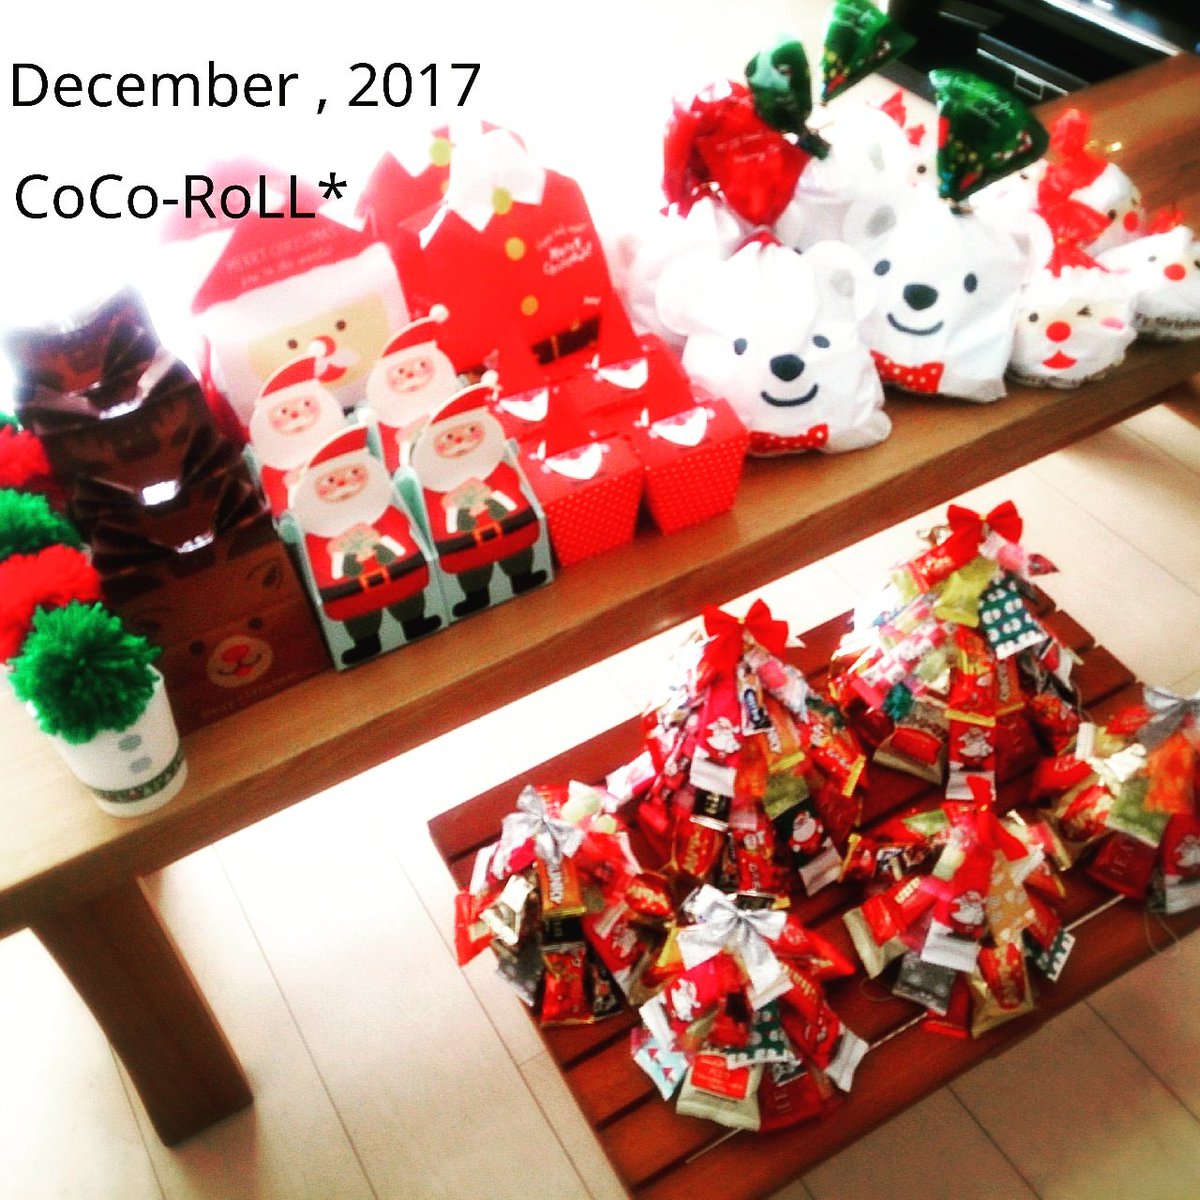 Cocoroll No Twitter ビンゴ景品のお菓子のラッピングが完了 Flyingtiger Seria ダイソーさんのラッピングアイテムを活用しました 安くてかわいいのがたくさんあって助かります クリスマス会 クリスマス景品 クリスマス準備 Xmas ラッピング